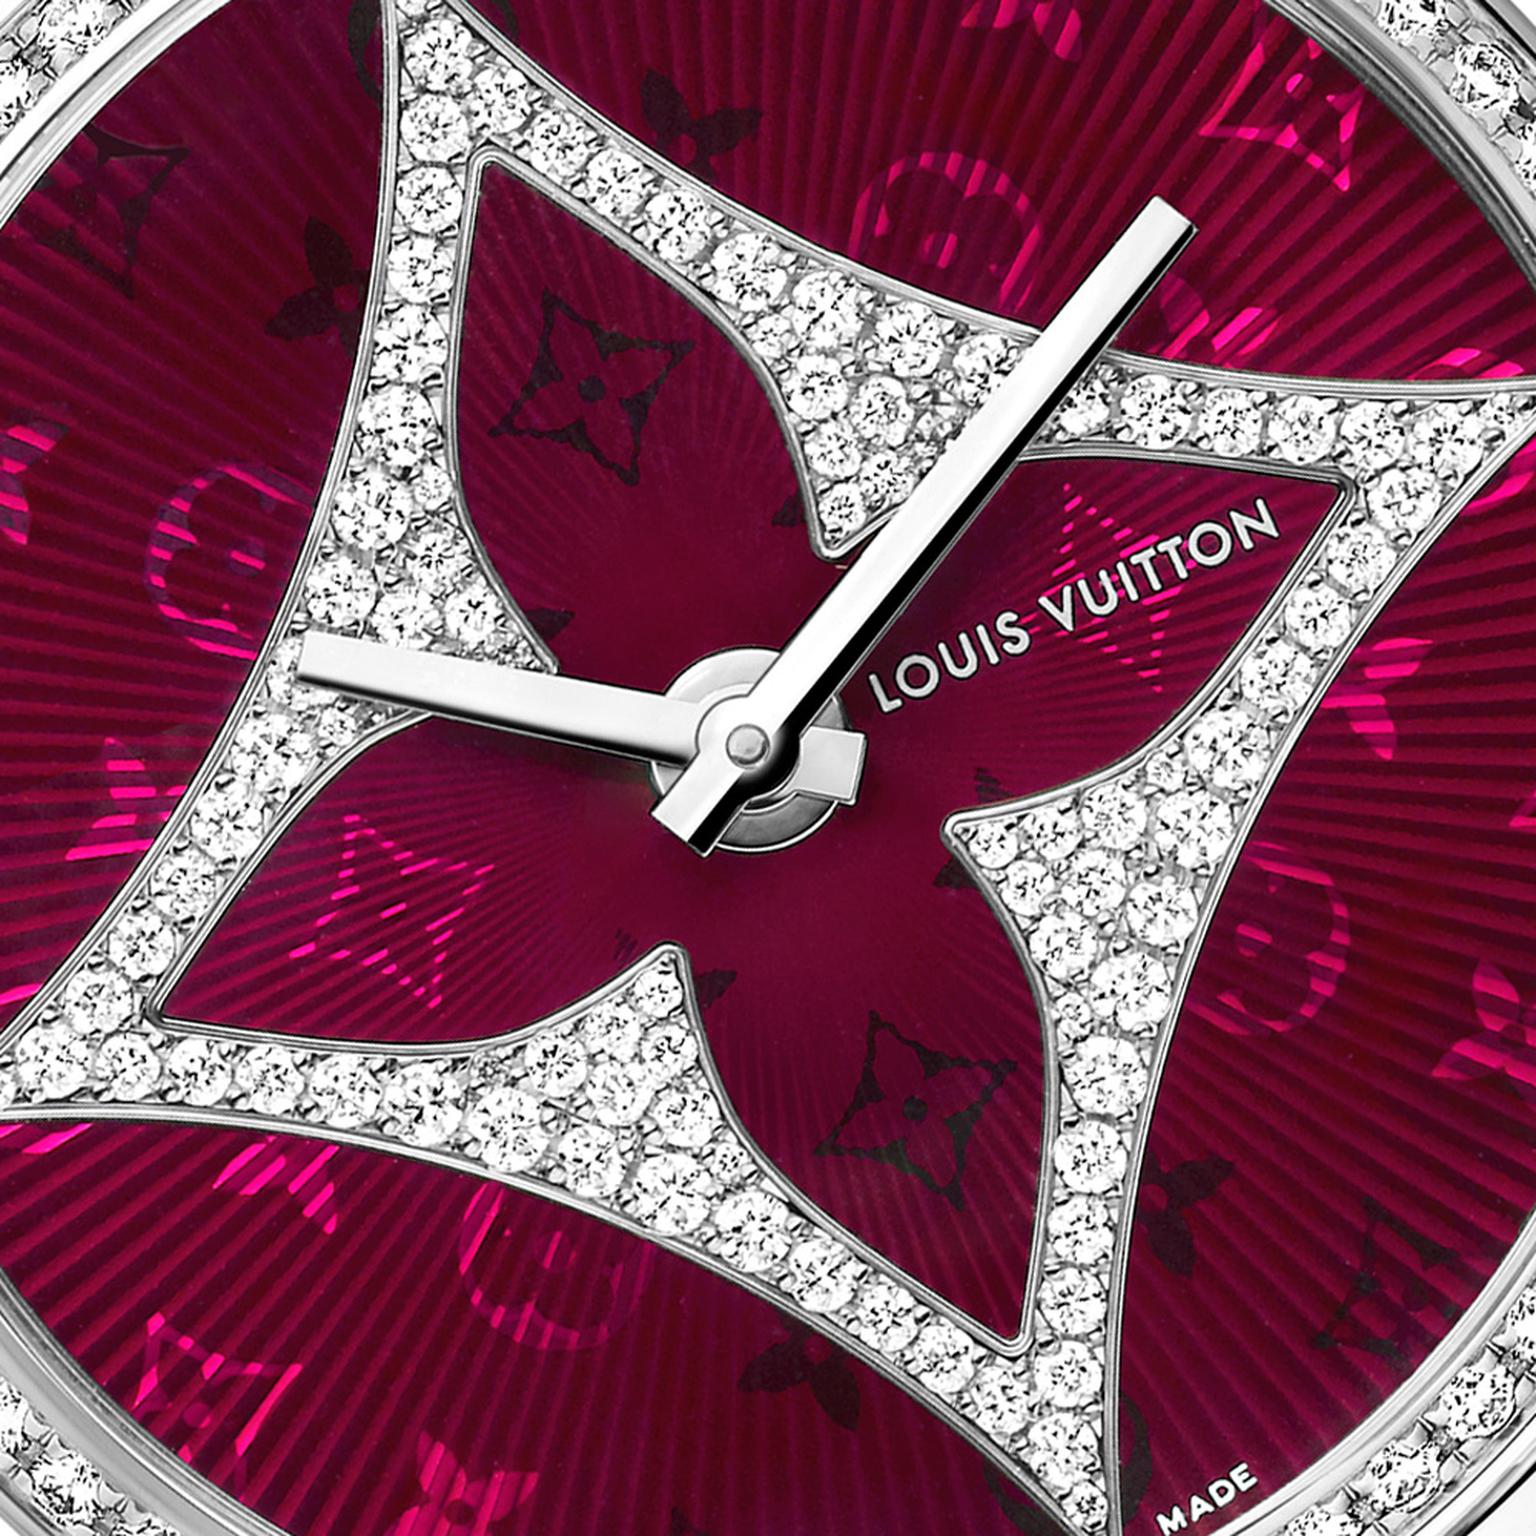 L'éternel by Louis Vuitton, a watch design concept : r/Louisvuitton